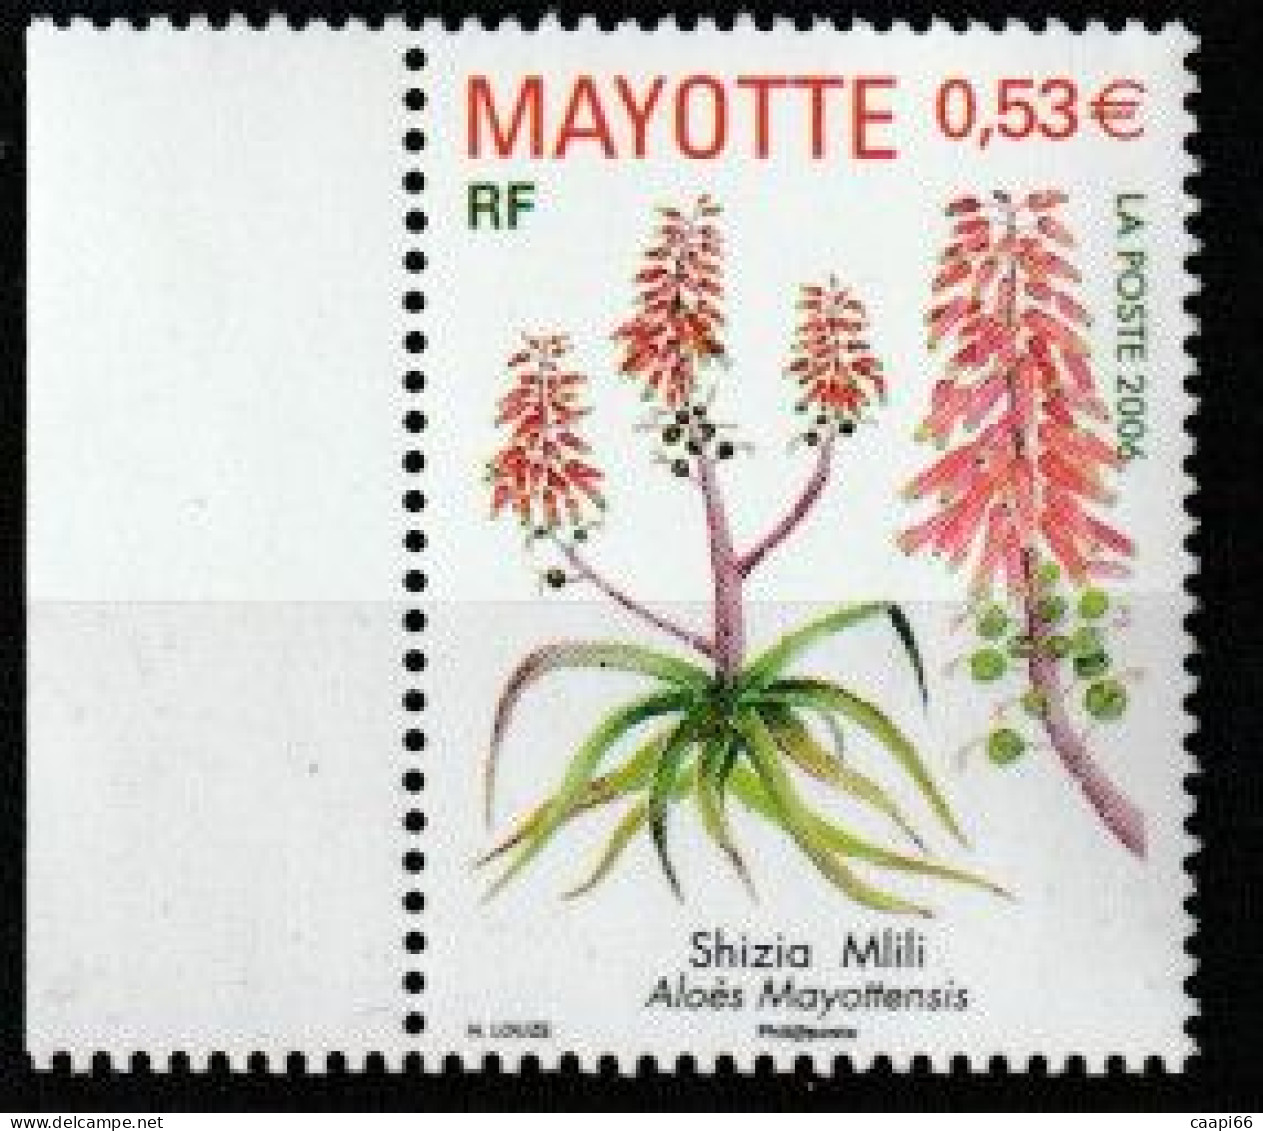 Mayotte - YT N° 190  - Neuf  - 2006 - Shizia Mlili - Aloès Mayottensis - Neufs